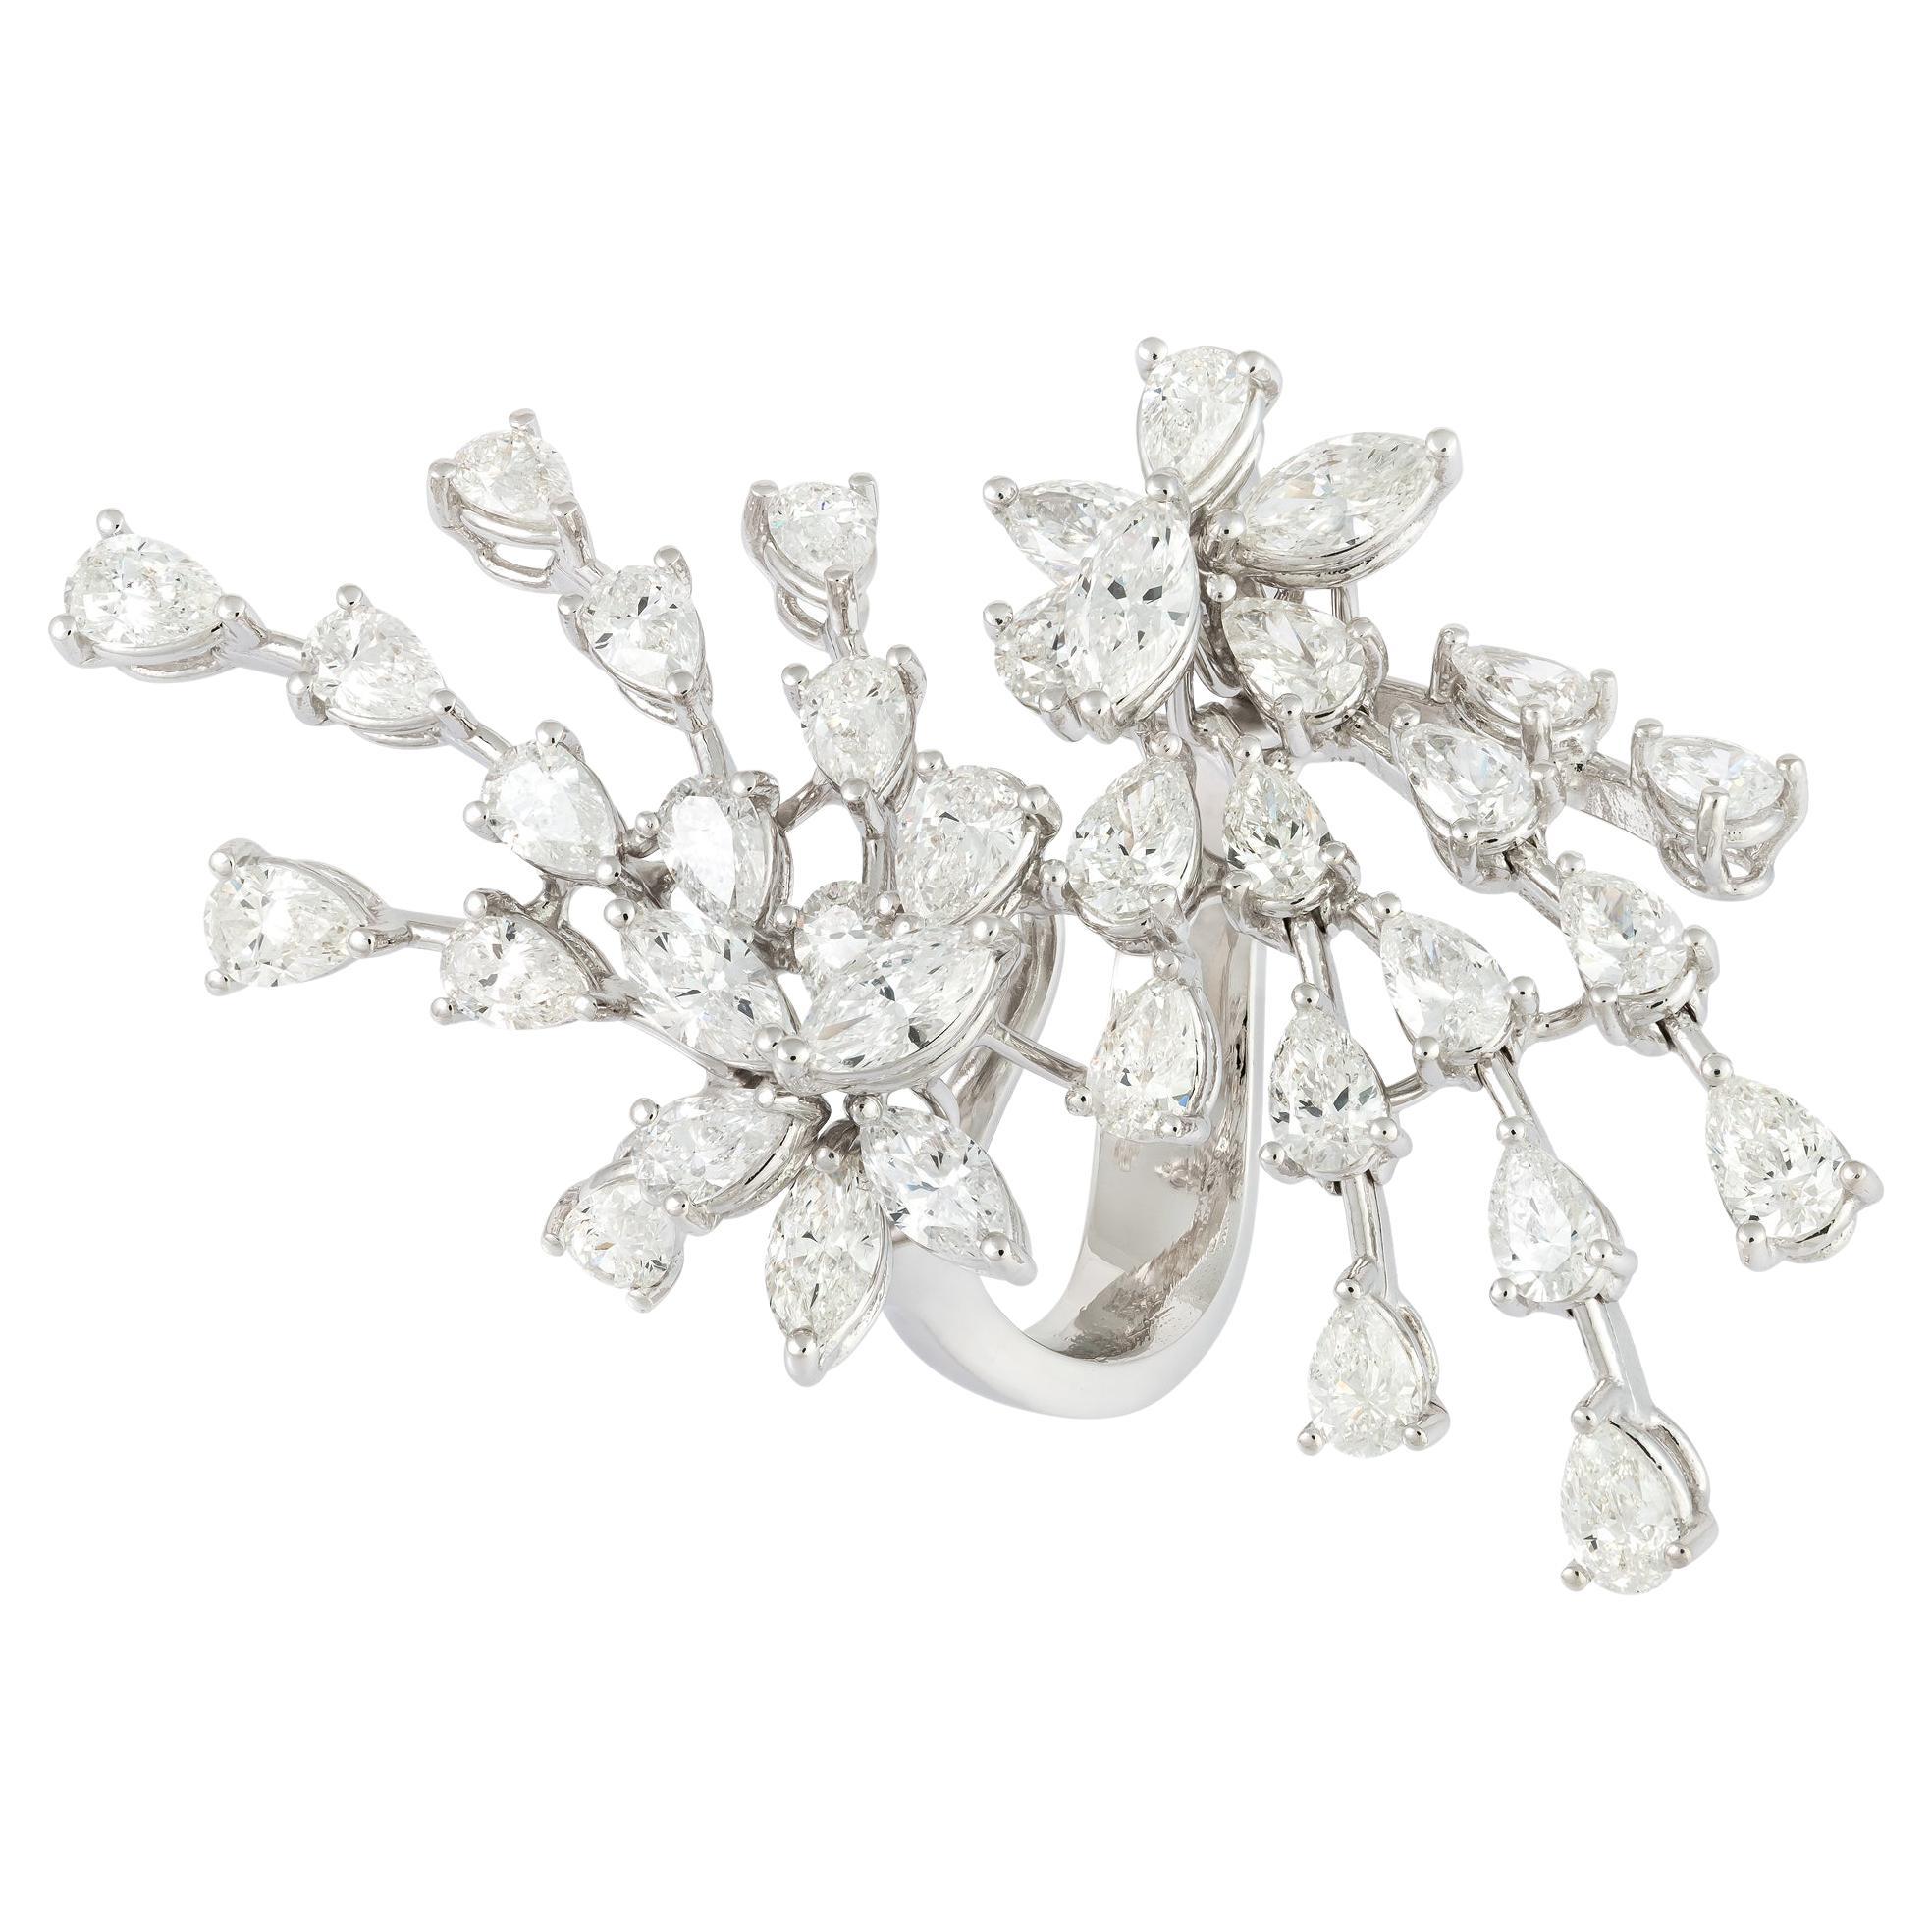 For Sale:  Sparkling White 18K Gold White Diamond Ring for Her